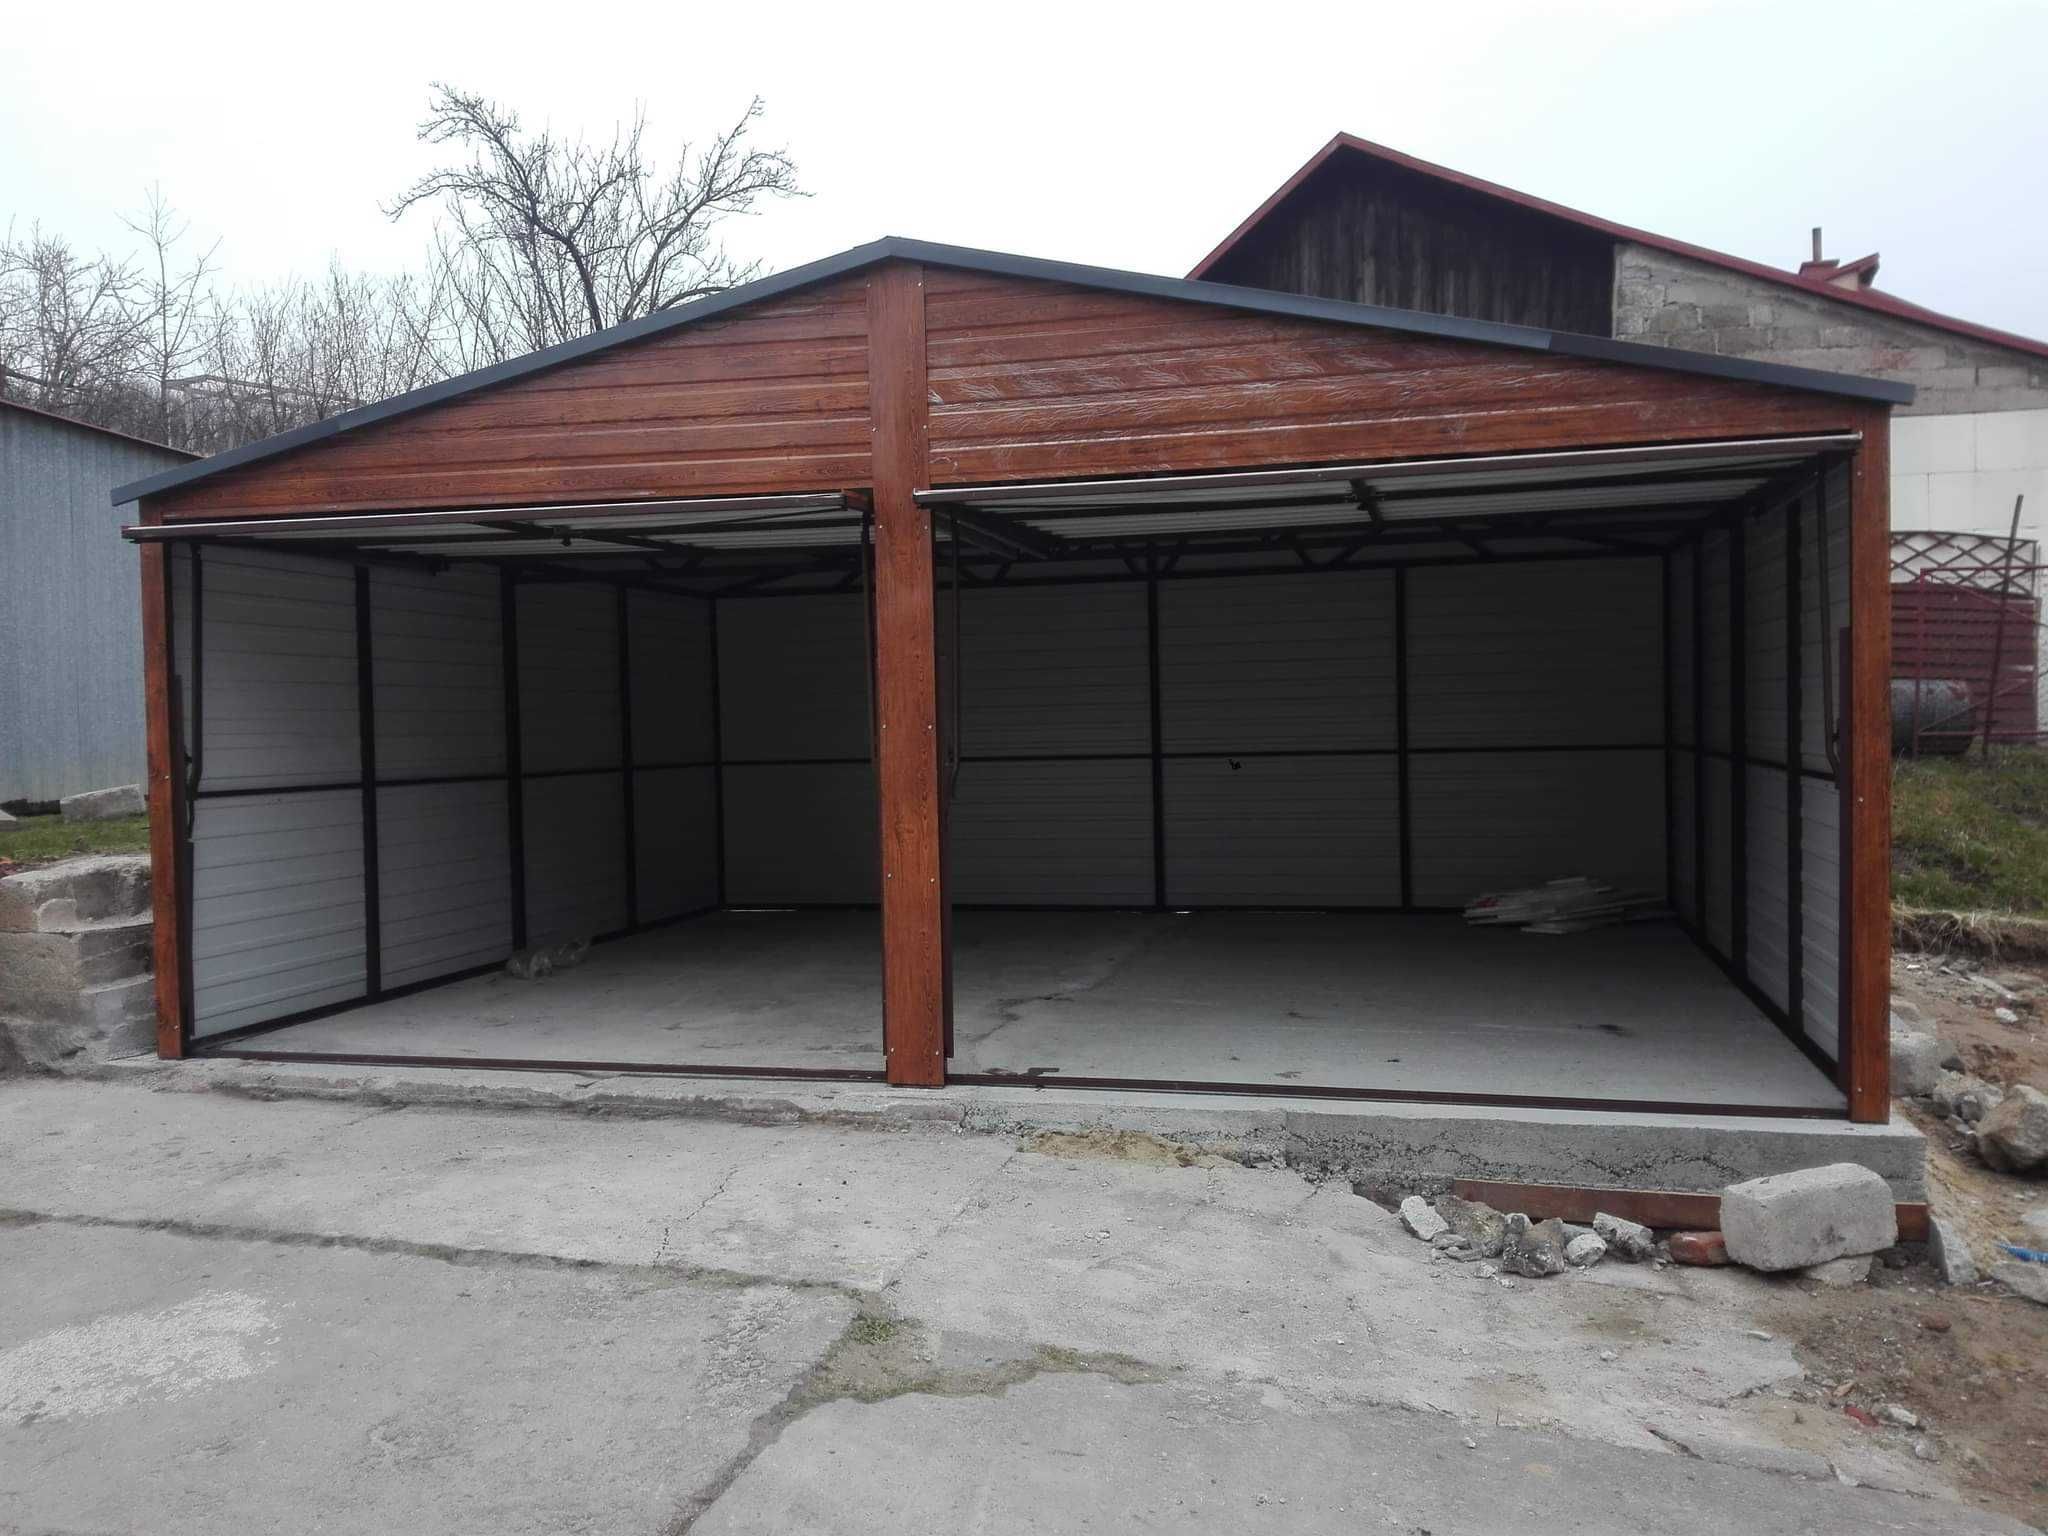 Garaż 6x5,6x6 dwuspadowy, drewnopodobny, garaże na wymiar,  producent,